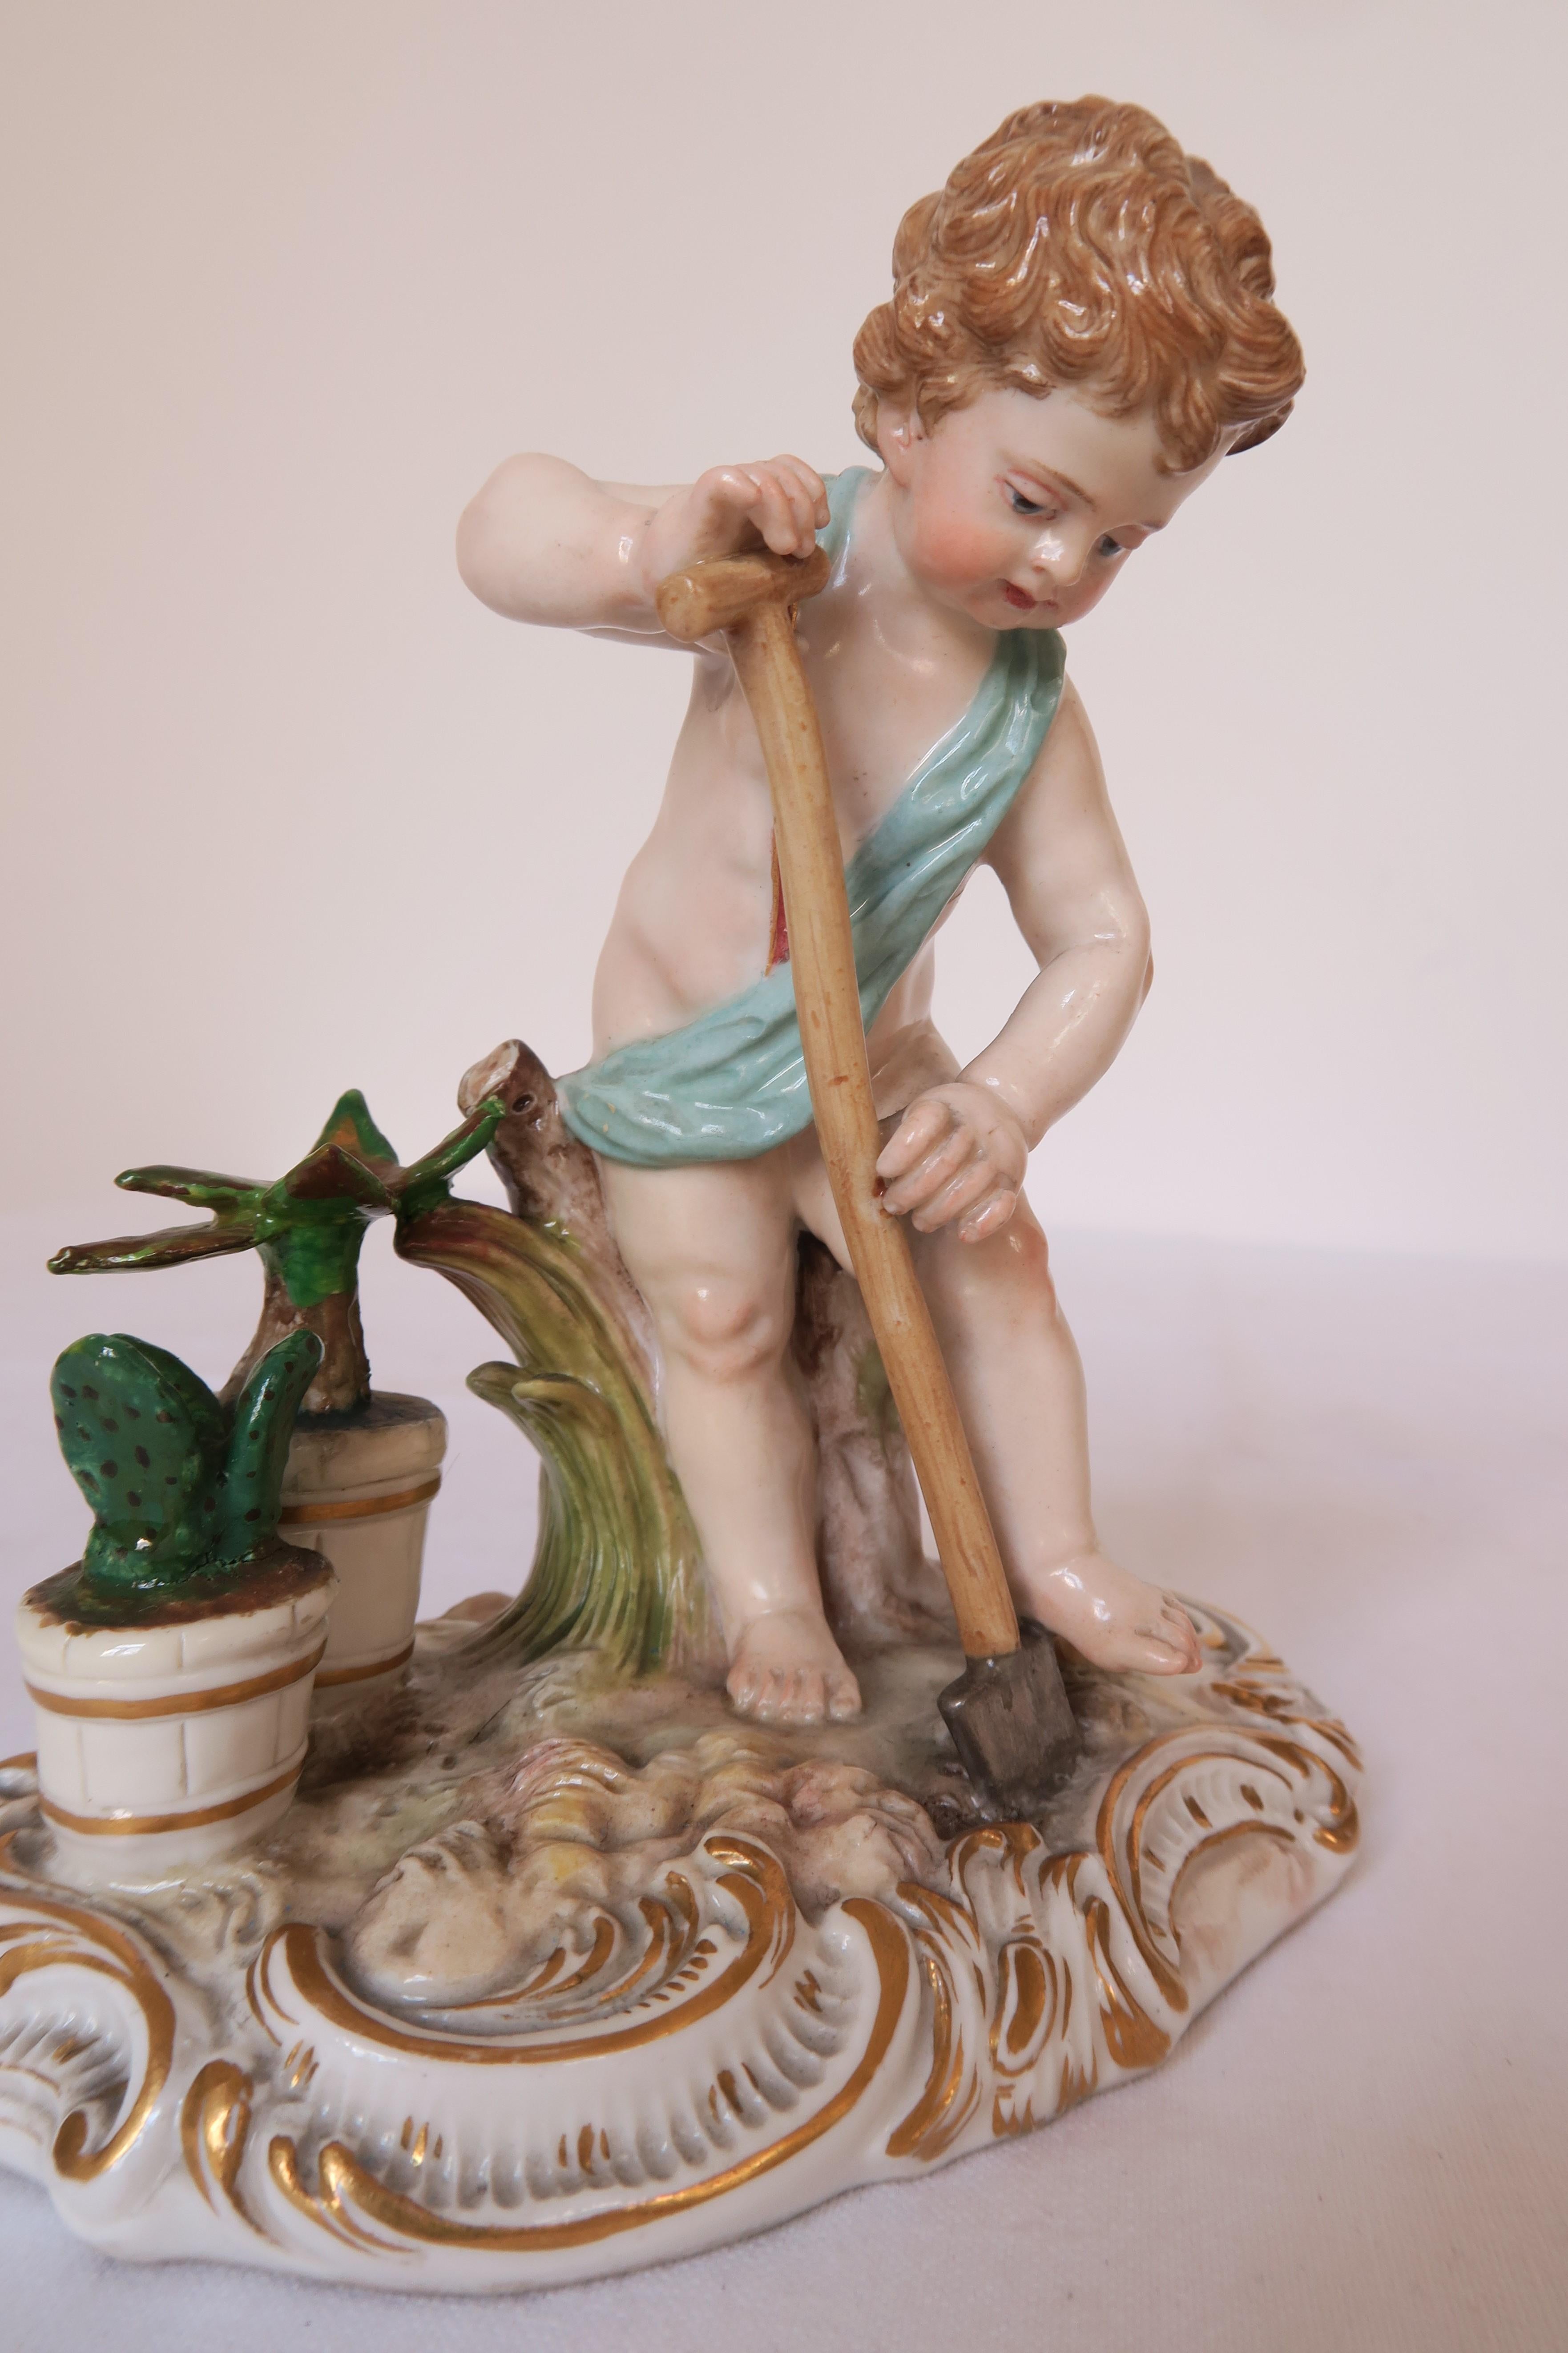 Dans cette annonce, vous trouverez la plus adorable des petites figurines en porcelaine. Il a été fabriqué par Meissen Porcelain dans les années 1860. La figurine représente un petit jardinier travaillant dans son jardin. Il est entouré de plantes